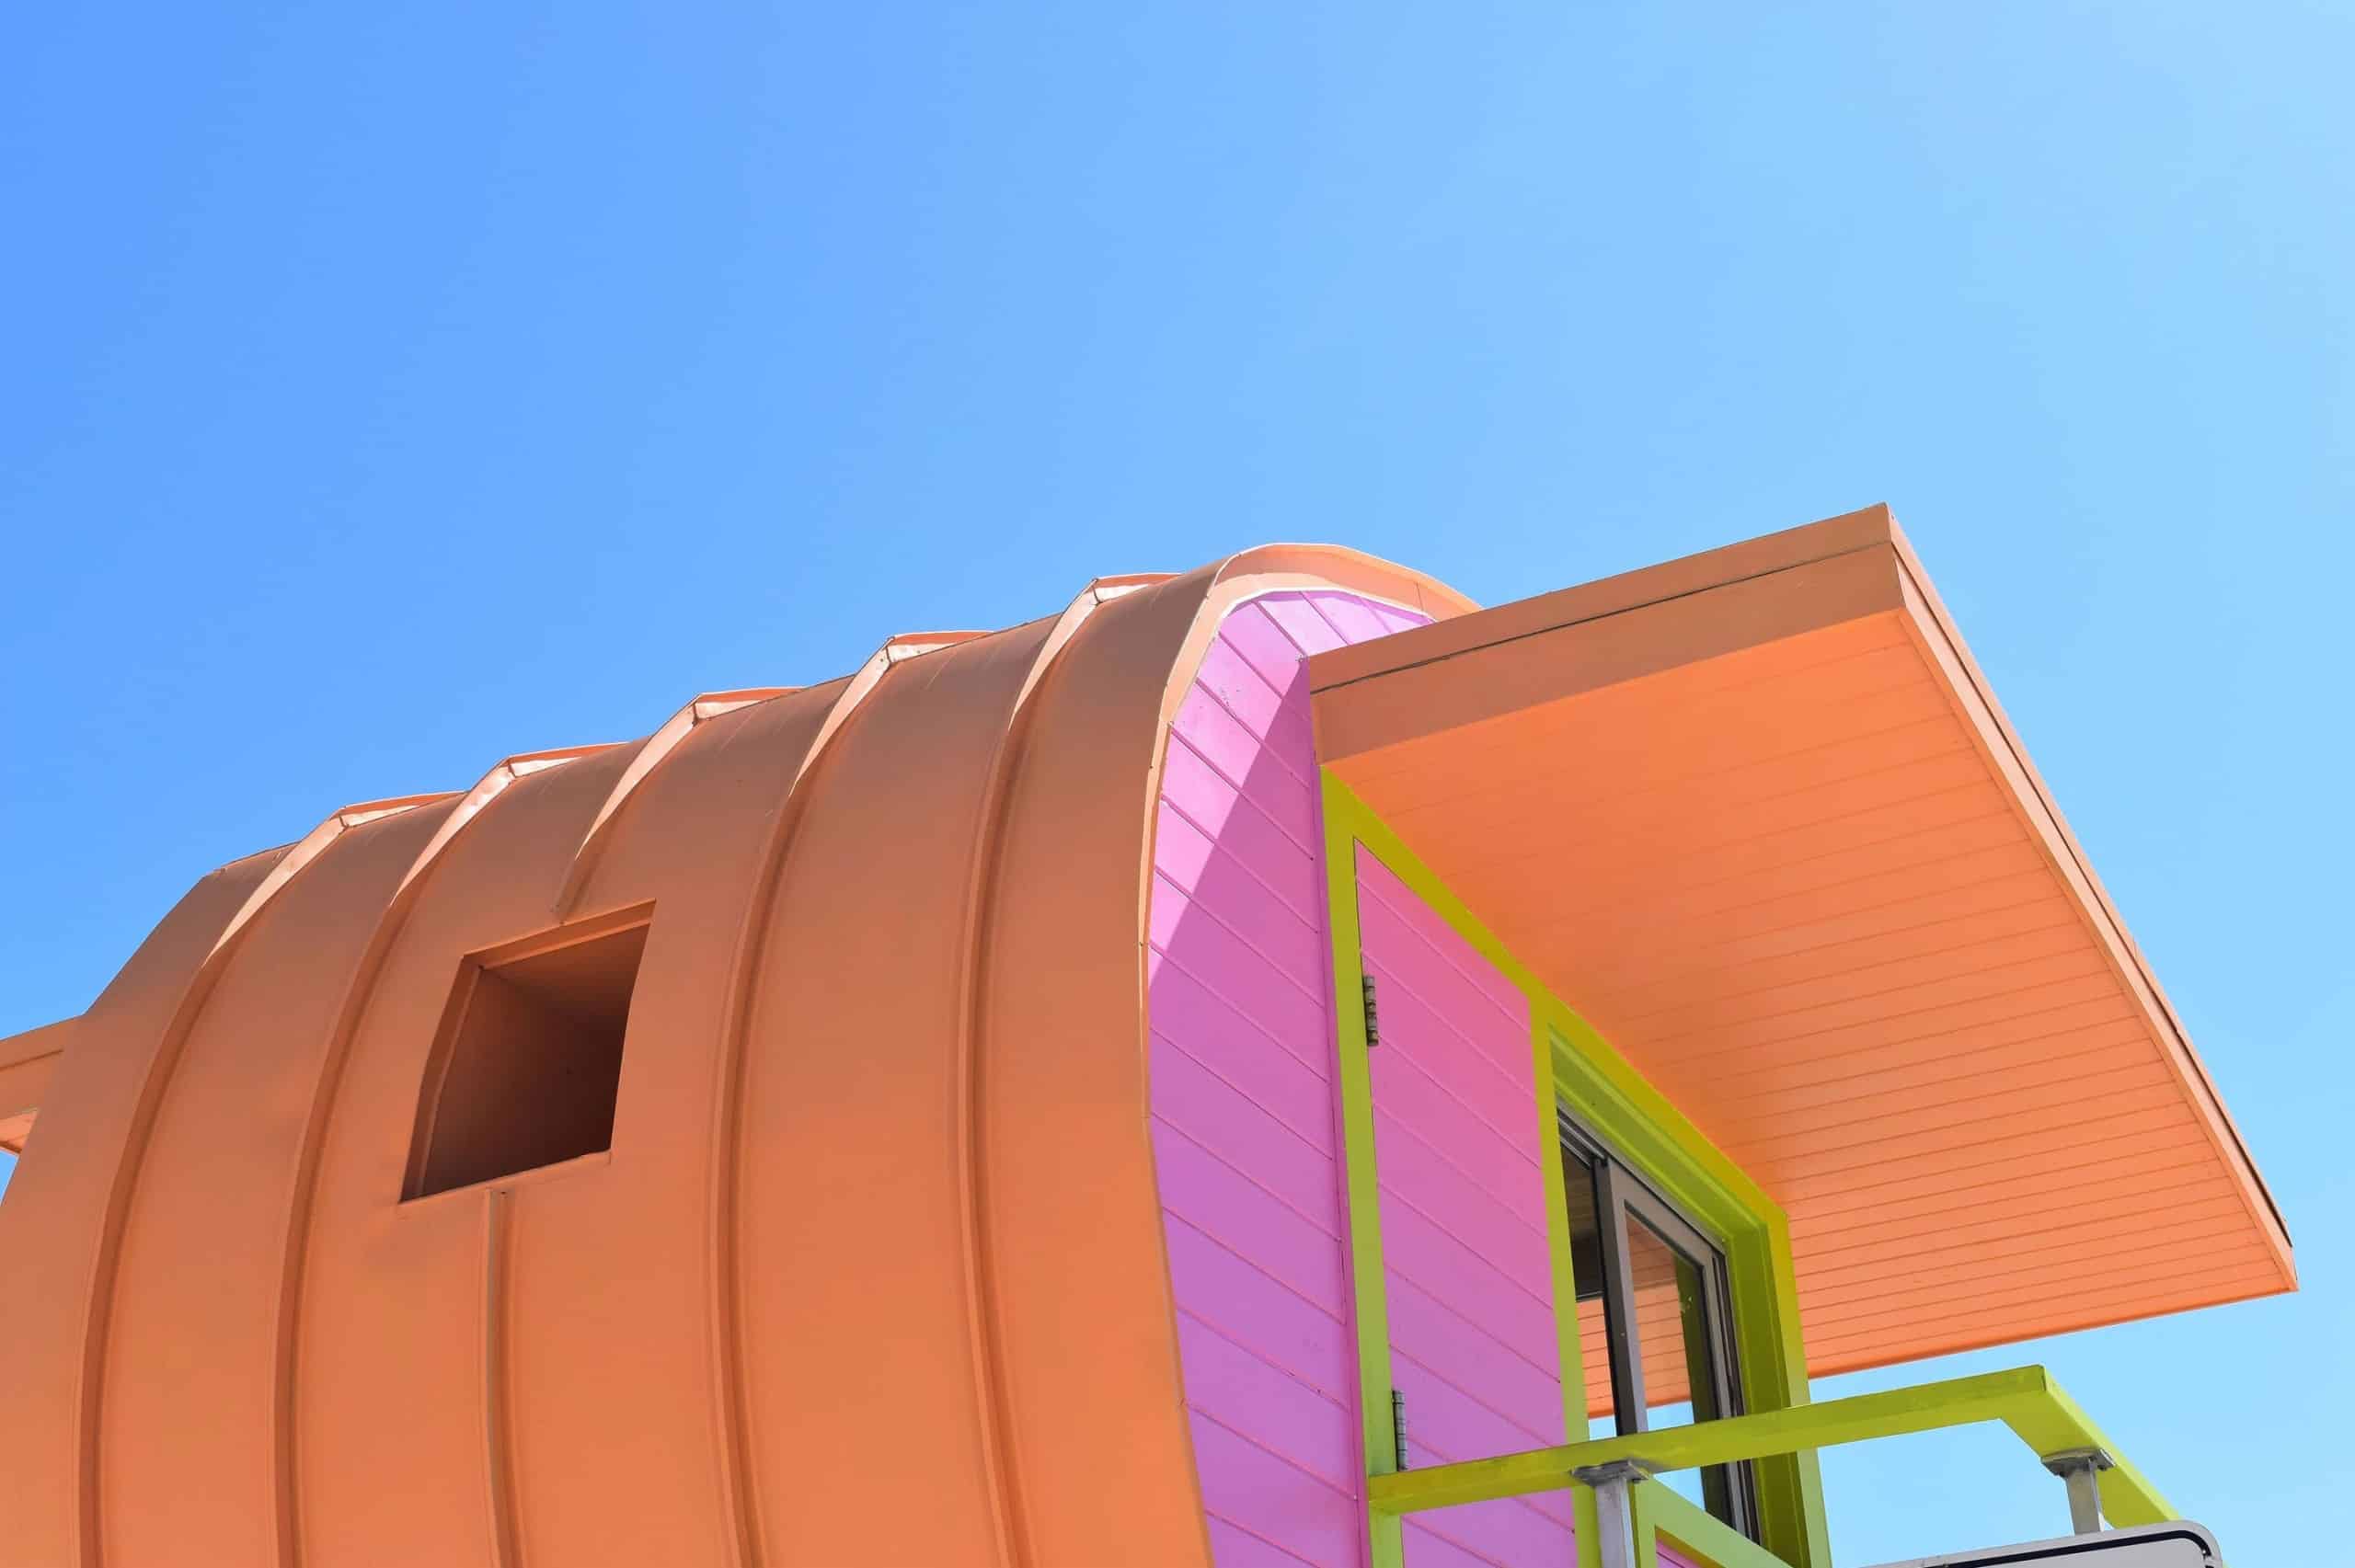 Detail der Rückwand und des Dachs eines Strandwächterhäuschens in Orange, Pink und Gelb. Miami Beach, Lifeguard Tower, William Lane, Foto: Archiv Architekten